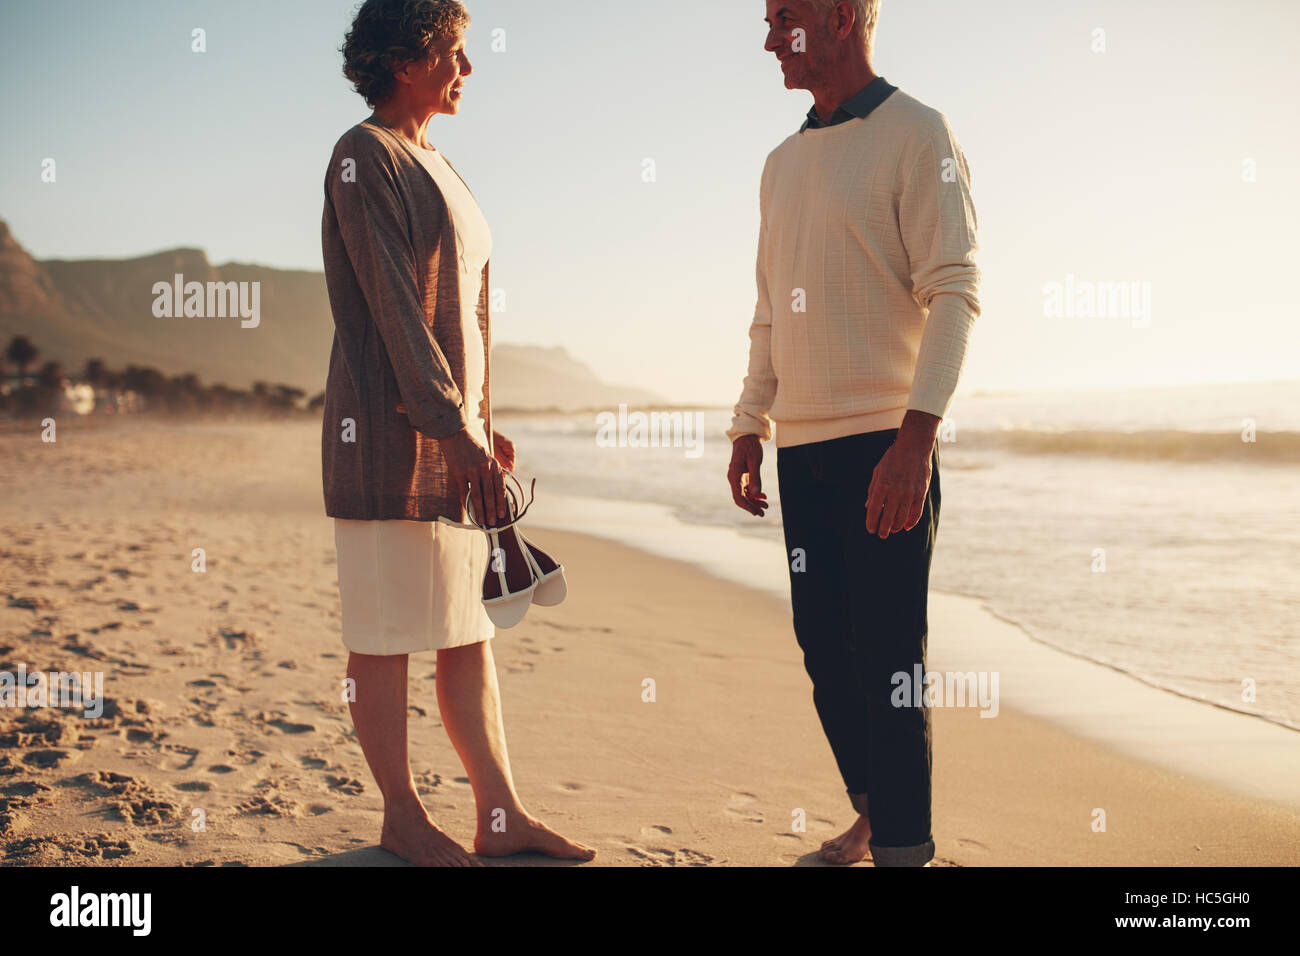 Im Freien Schuss glücklich älteres paar stehen am Strand zusammen und reden. Senior Mann und ältere Frau am Ufer Meeres. Stockfoto